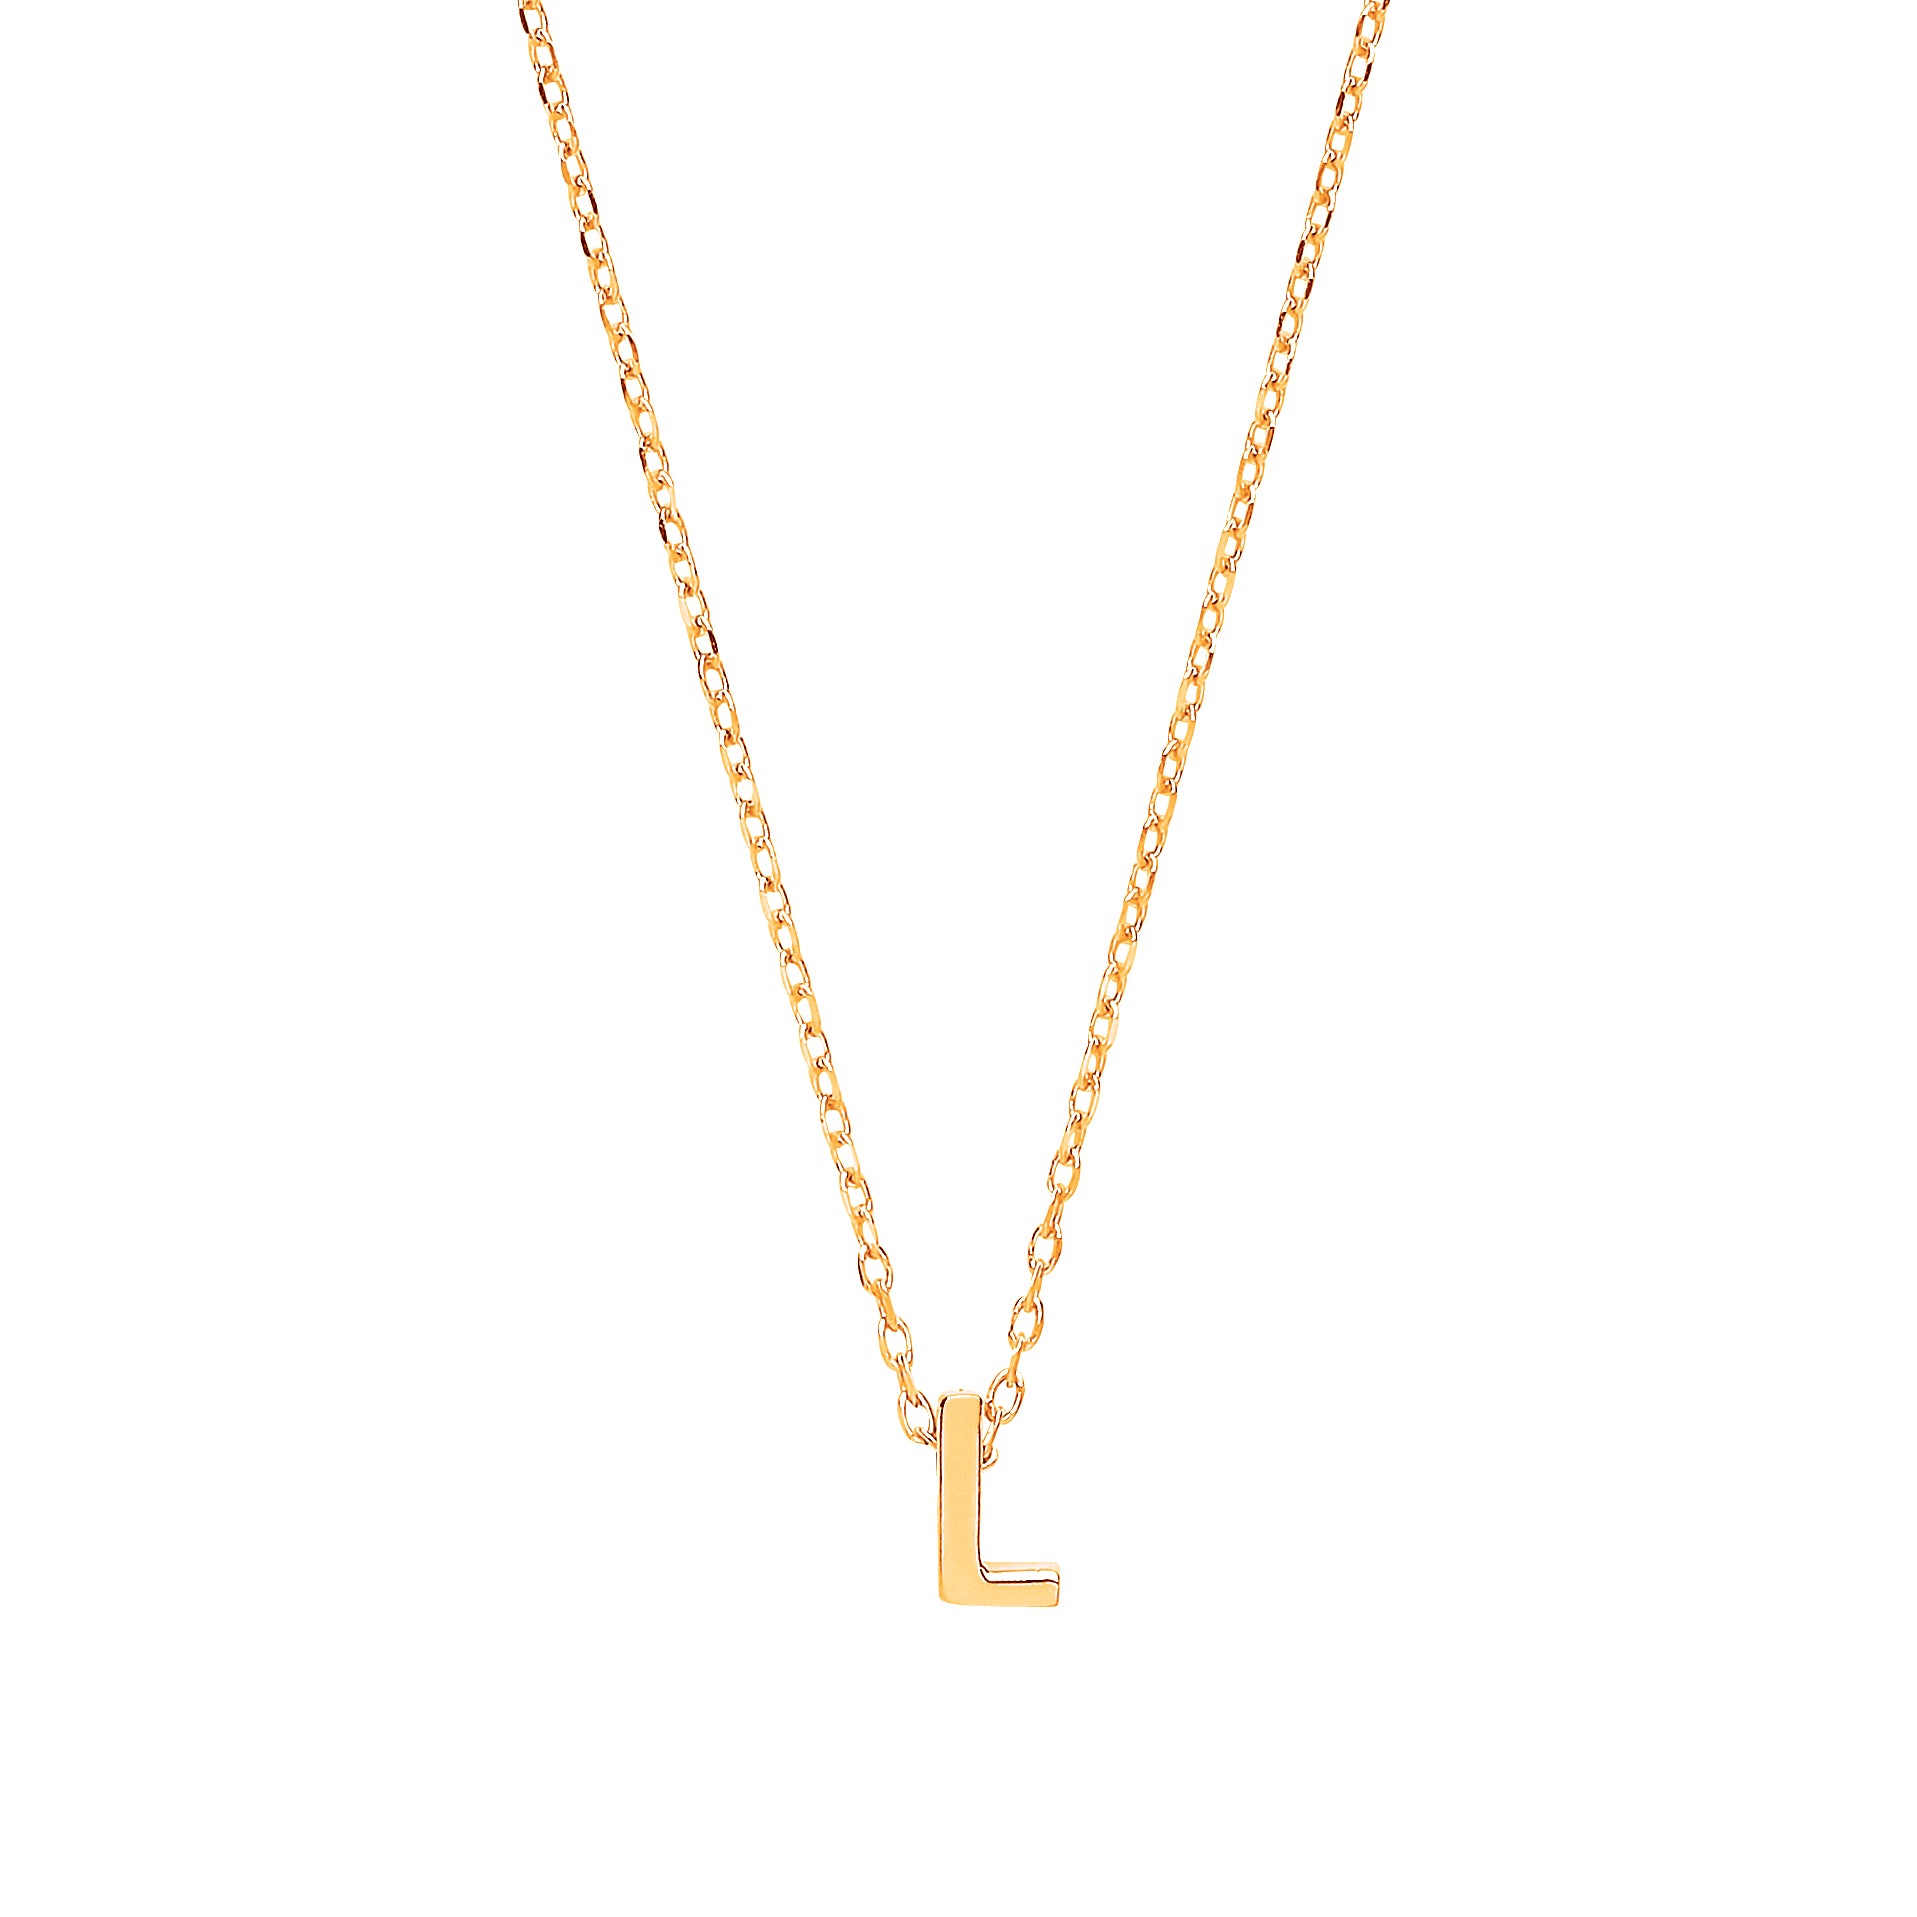 9ct Gold  Letter L Initial Pendant Necklace 17 inch 43cm - G9P6032L